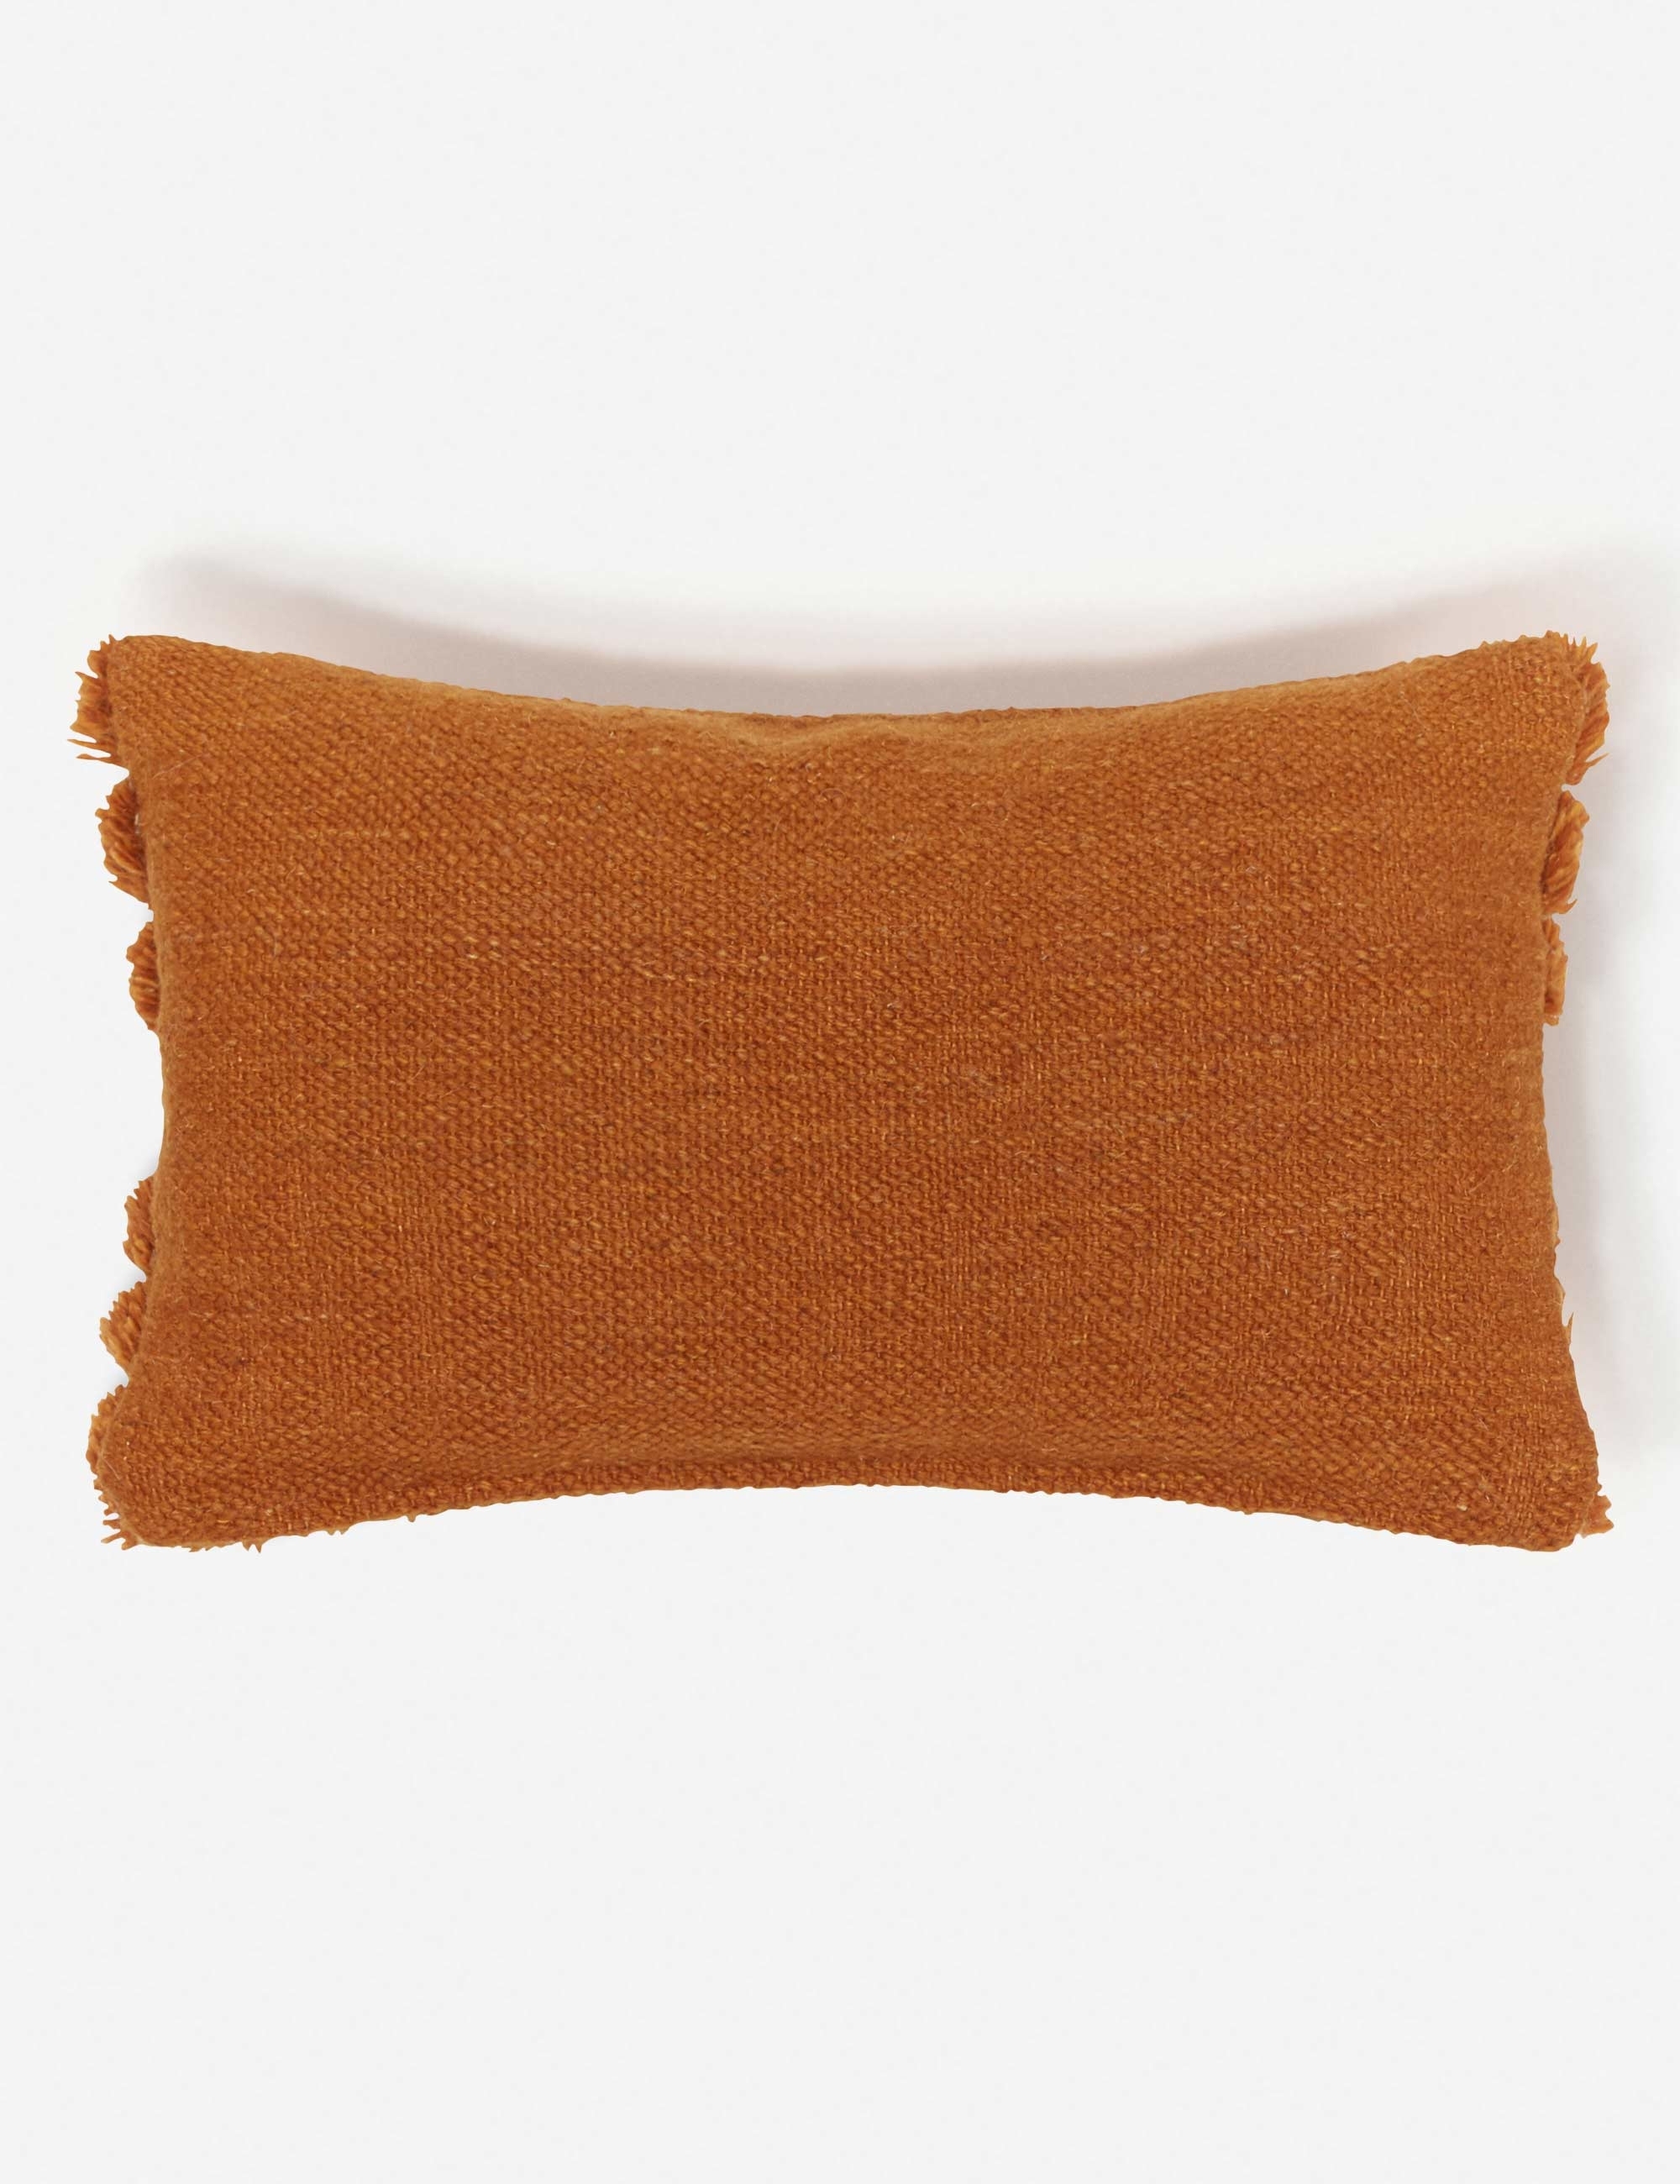 Arches Lumbar Pillow, Rust By Sarah Sherman Samuel - Image 5